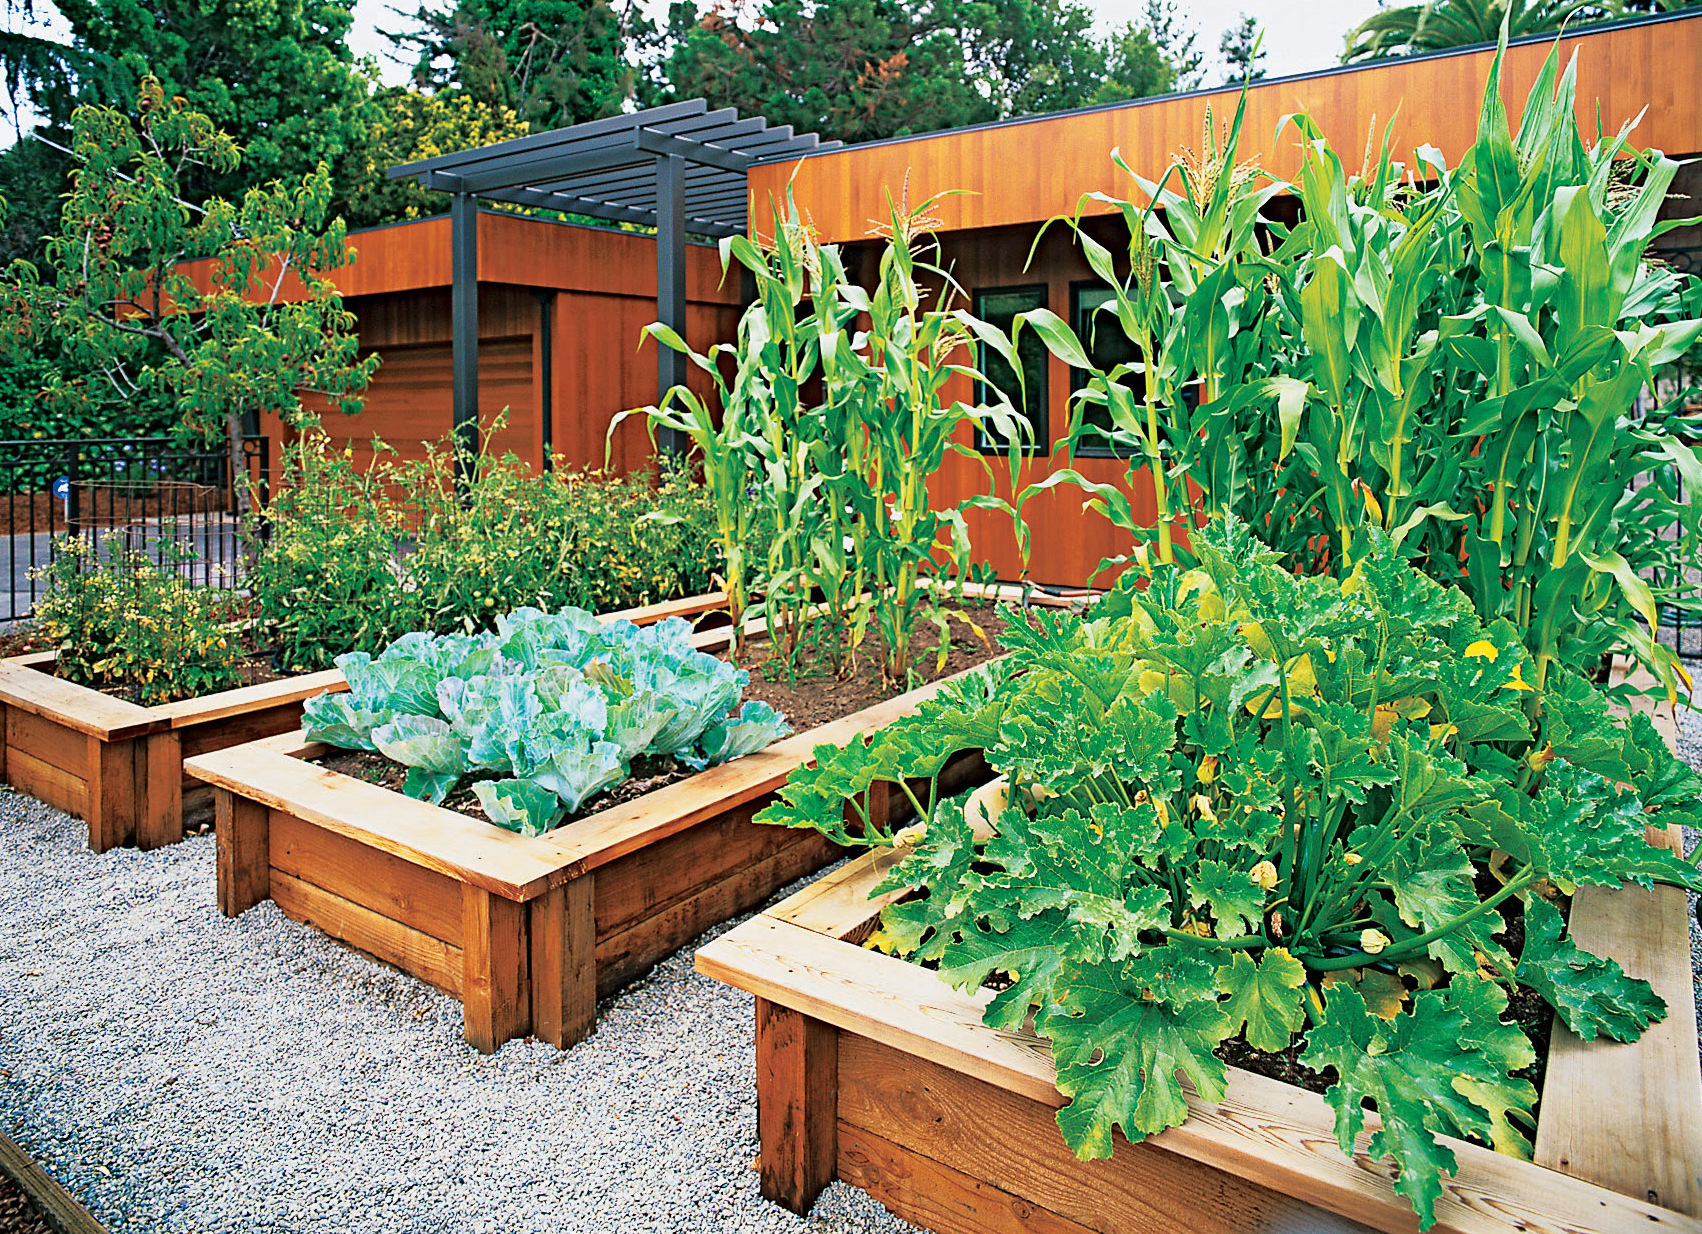  patio vegetable garden ideas